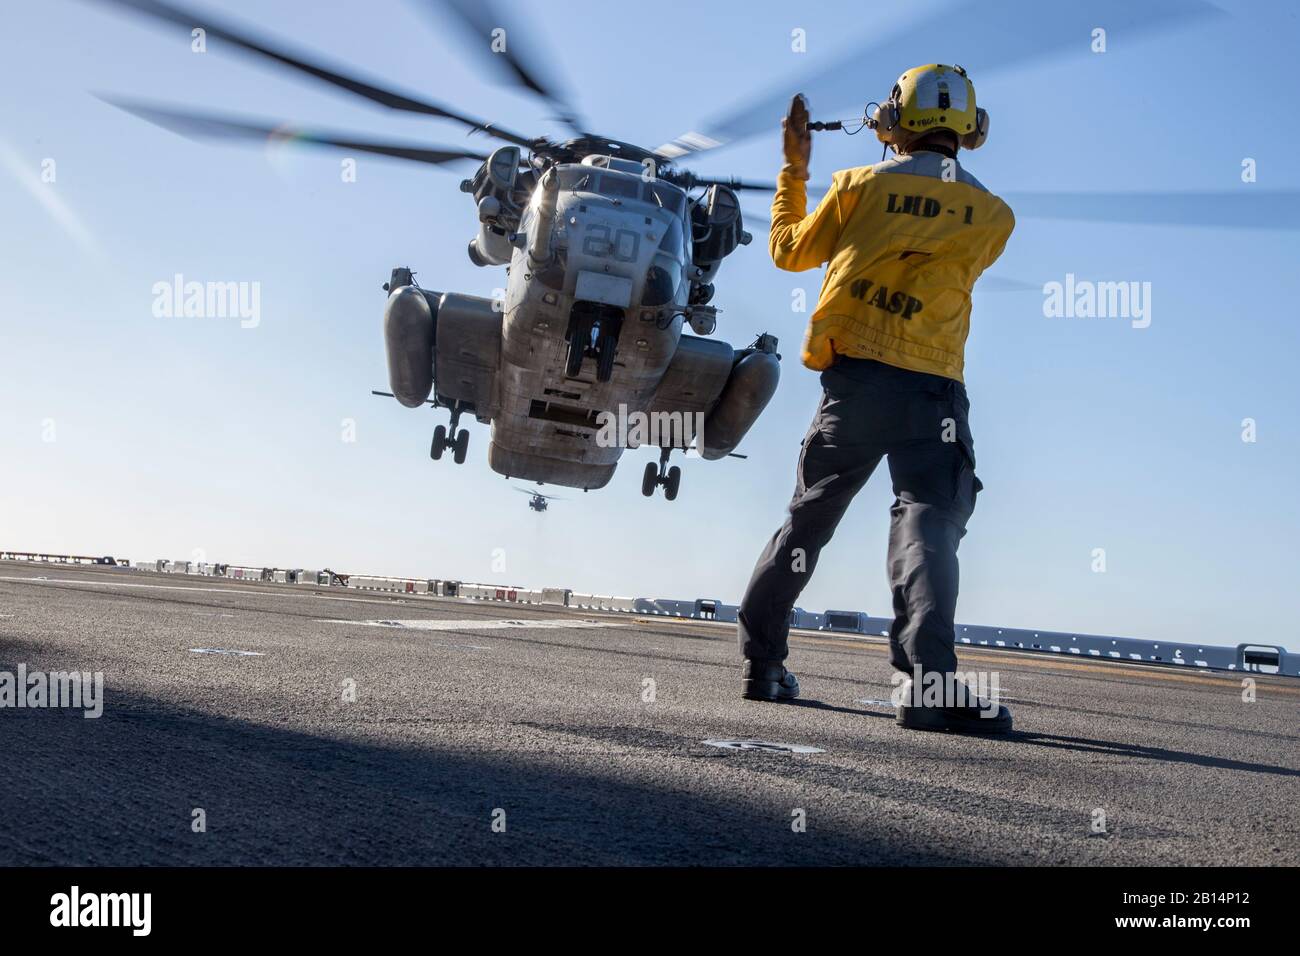 L'aviation de la Marine américaine maître de Manœuvre (manutention) Seaman Noel signaux Kulloda le pilote d'un CH-53E Super Stallion affectés à l'Escadron d'hélicoptères lourds Marine (HMH), 361 aéronefs maritimes Groupe 16, 3rd Marine Aircraft Wing, lors des qualifications d'appontage à bord du USS Essex (LHD-2) dans le cadre de l'exercice Dawn Blitz dans l'océan Pacifique au large de la Californie, 21 oct., 2017. Dawn Blitz est un exercice amphibie piloté par des scénarios réalisés entre 3 et groupe expéditionnaire 1re brigade expéditionnaire de marines, de tester leur capacité à mener des opérations amphibies en réponse aux crises mondiales et de proj Banque D'Images